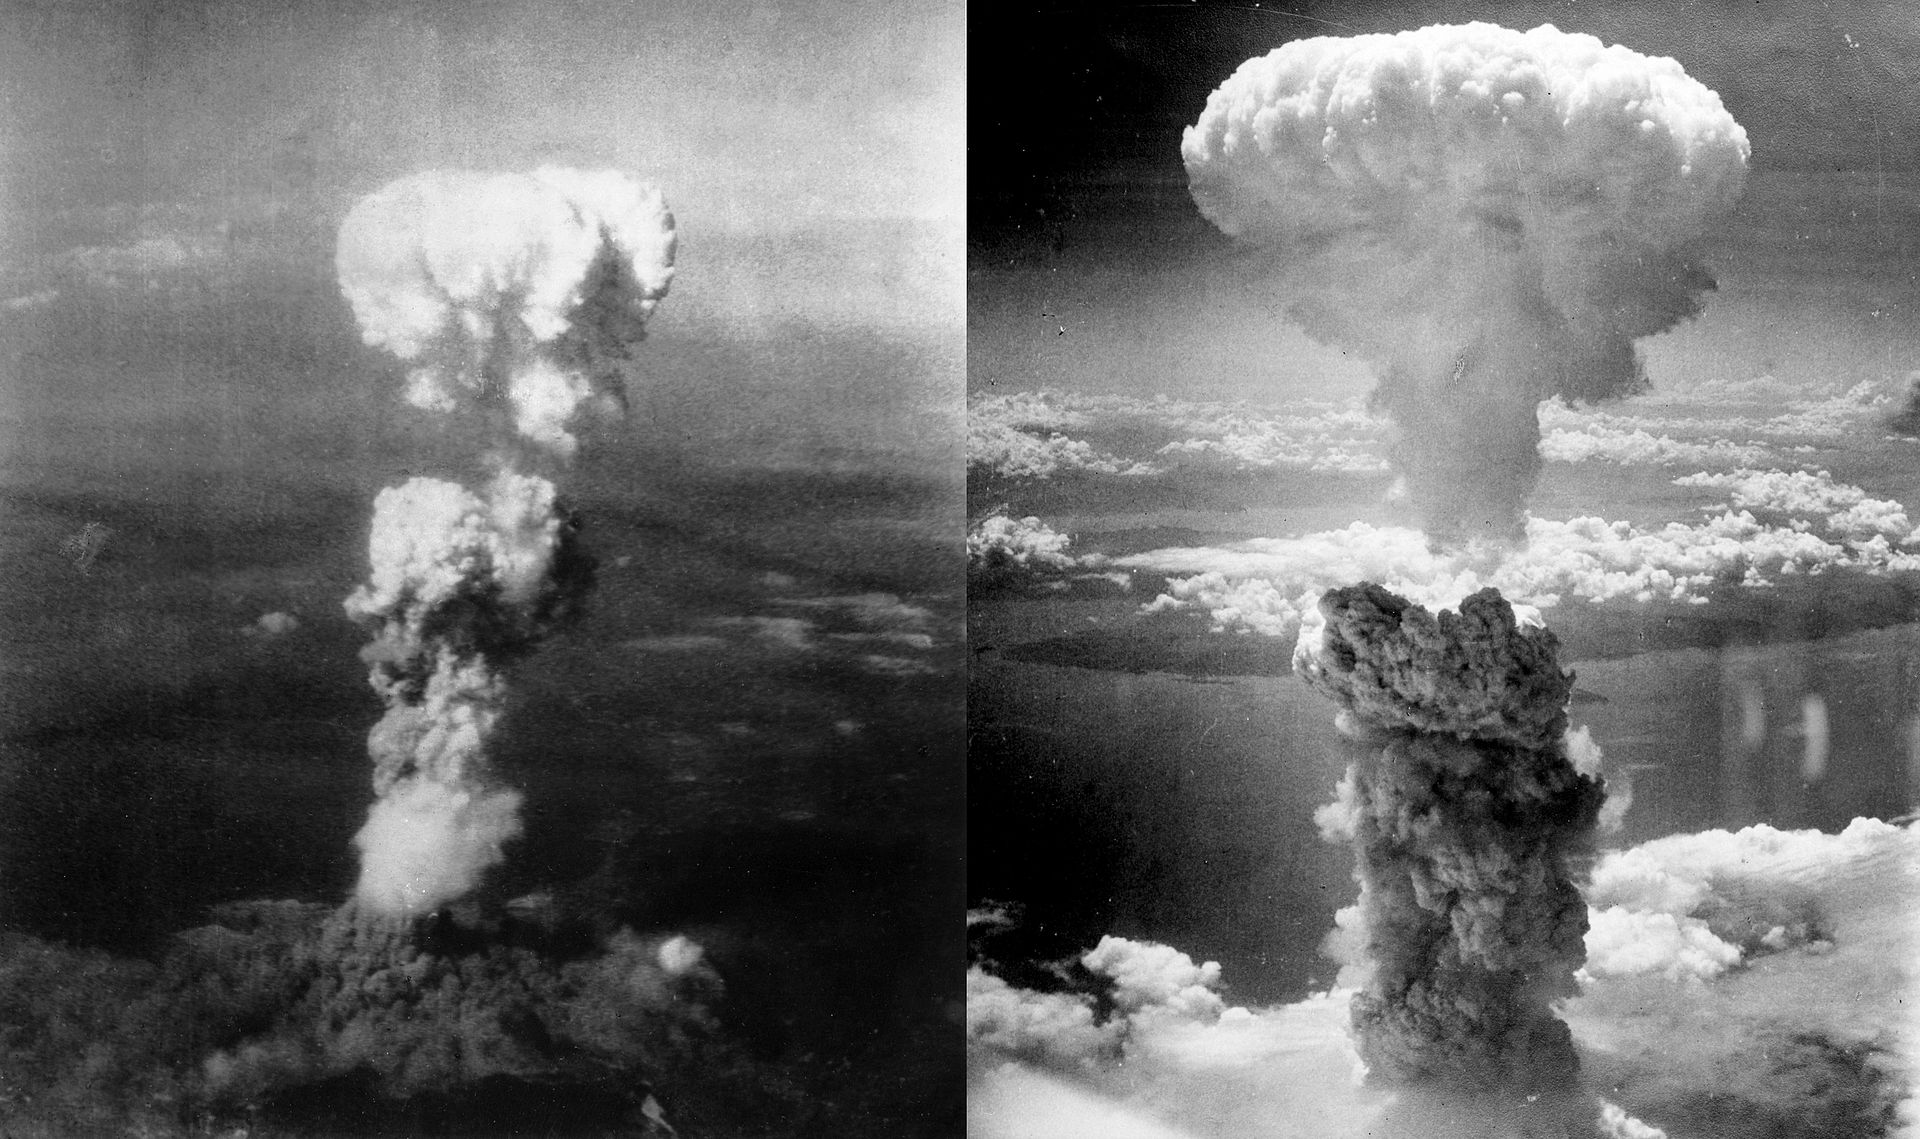 Fotó: Gombafelhő Hirosima (balra) és Nagaszaki (jobbra) felett, 1945. augusztus 6/9. <br /><br />A légi felvételeket George R. Caron, a bombát Hirosimába szállító Enola Gay nevű repülőgép faroklövésze készítette. A következő hetekben számos helyen megjelentek, például a Life 1945. augusztus 20-i számában. Noha sokan ekkor látták először a 6000 méterrel a város fölött lebegő magas, boltozatos tetejű felhőt, a hirosimai képek alig emlékeztettek az atomkorszak jelképévé vált gomba alakú felhőre.